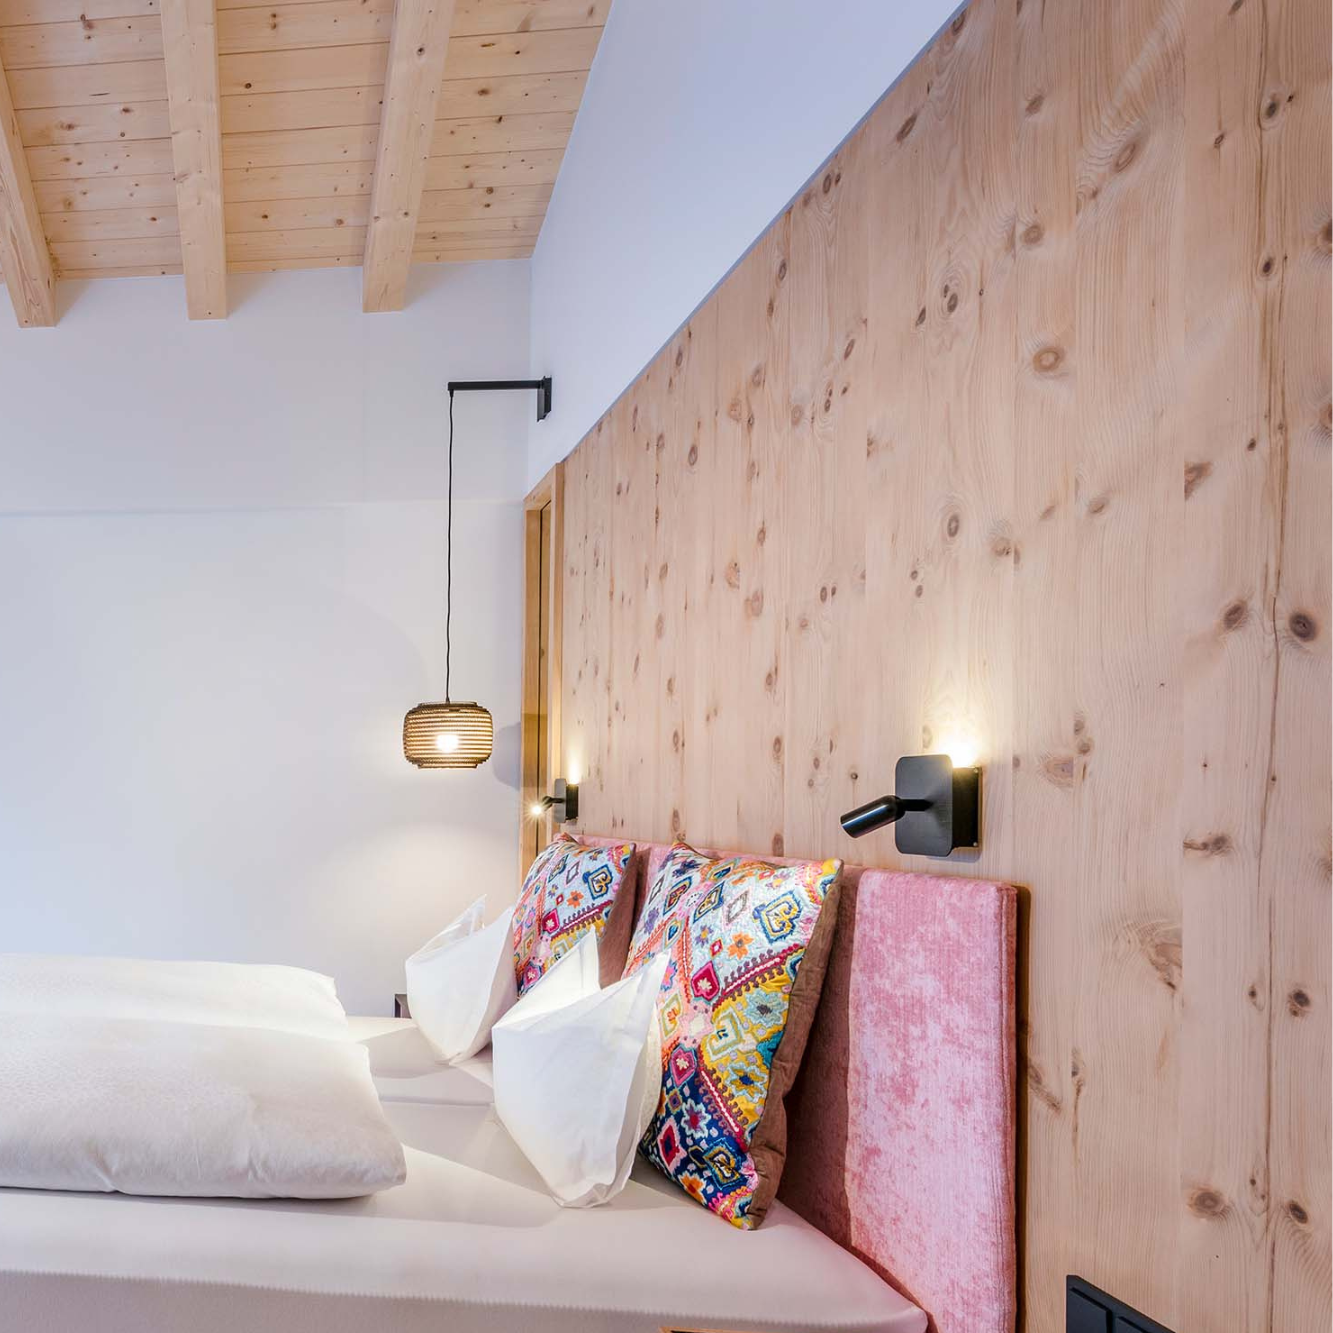 Ein aufgeräumtes Bett mit Holzwand dahinter